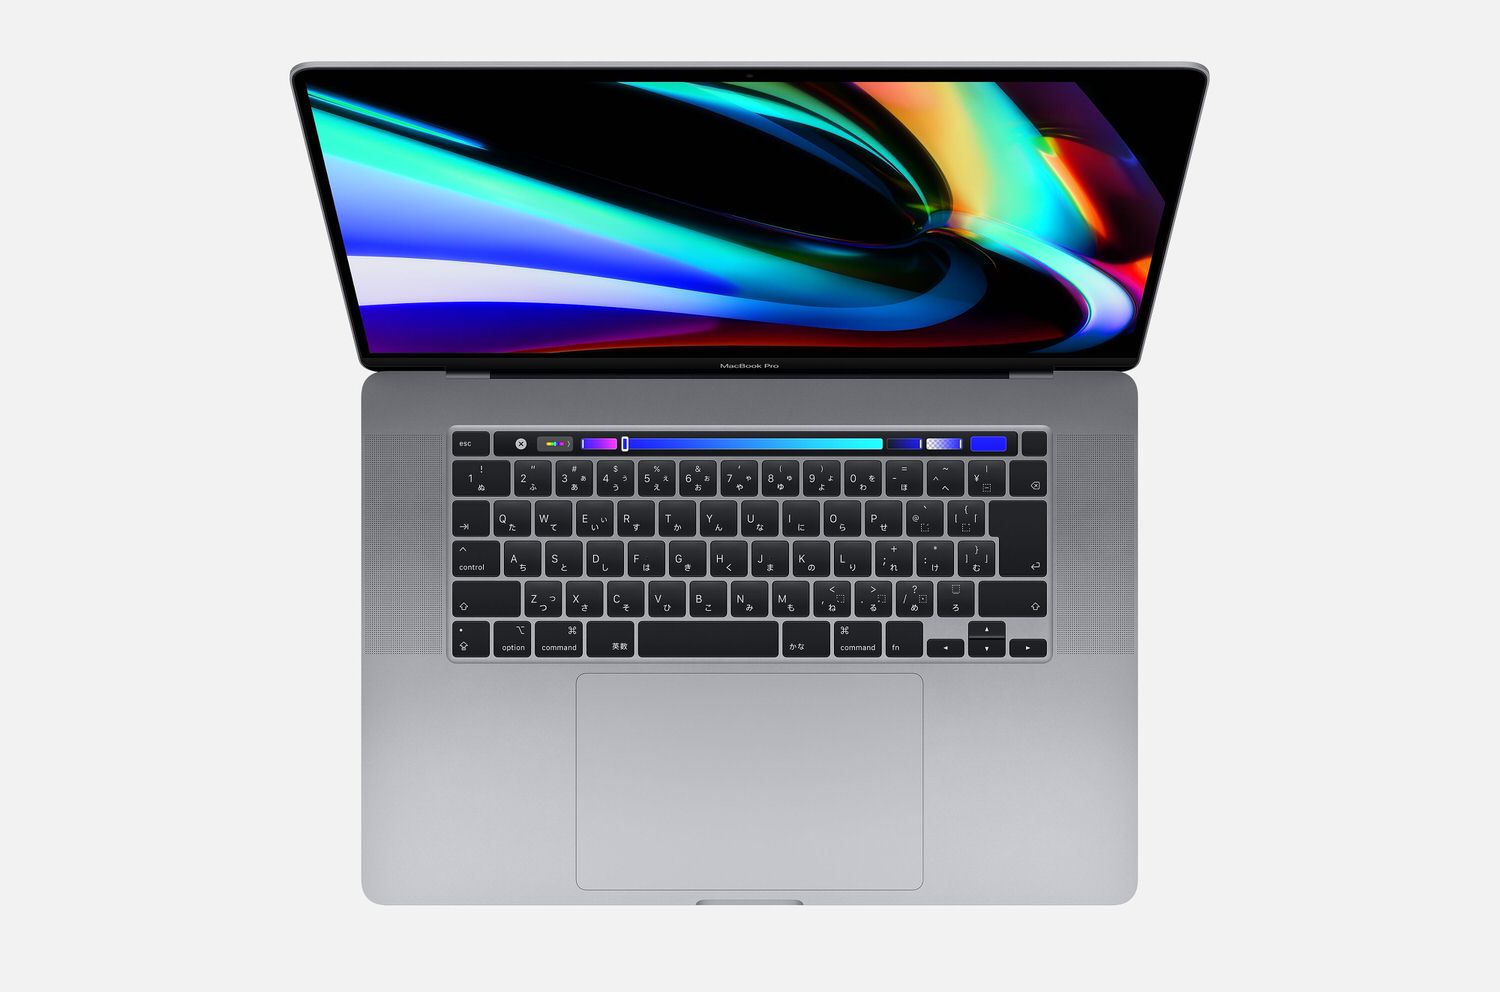 PC/タブレット ノートPC 大幅にプライスダウン MacBook Pro 16インチ,2019 sushitai.com.mx